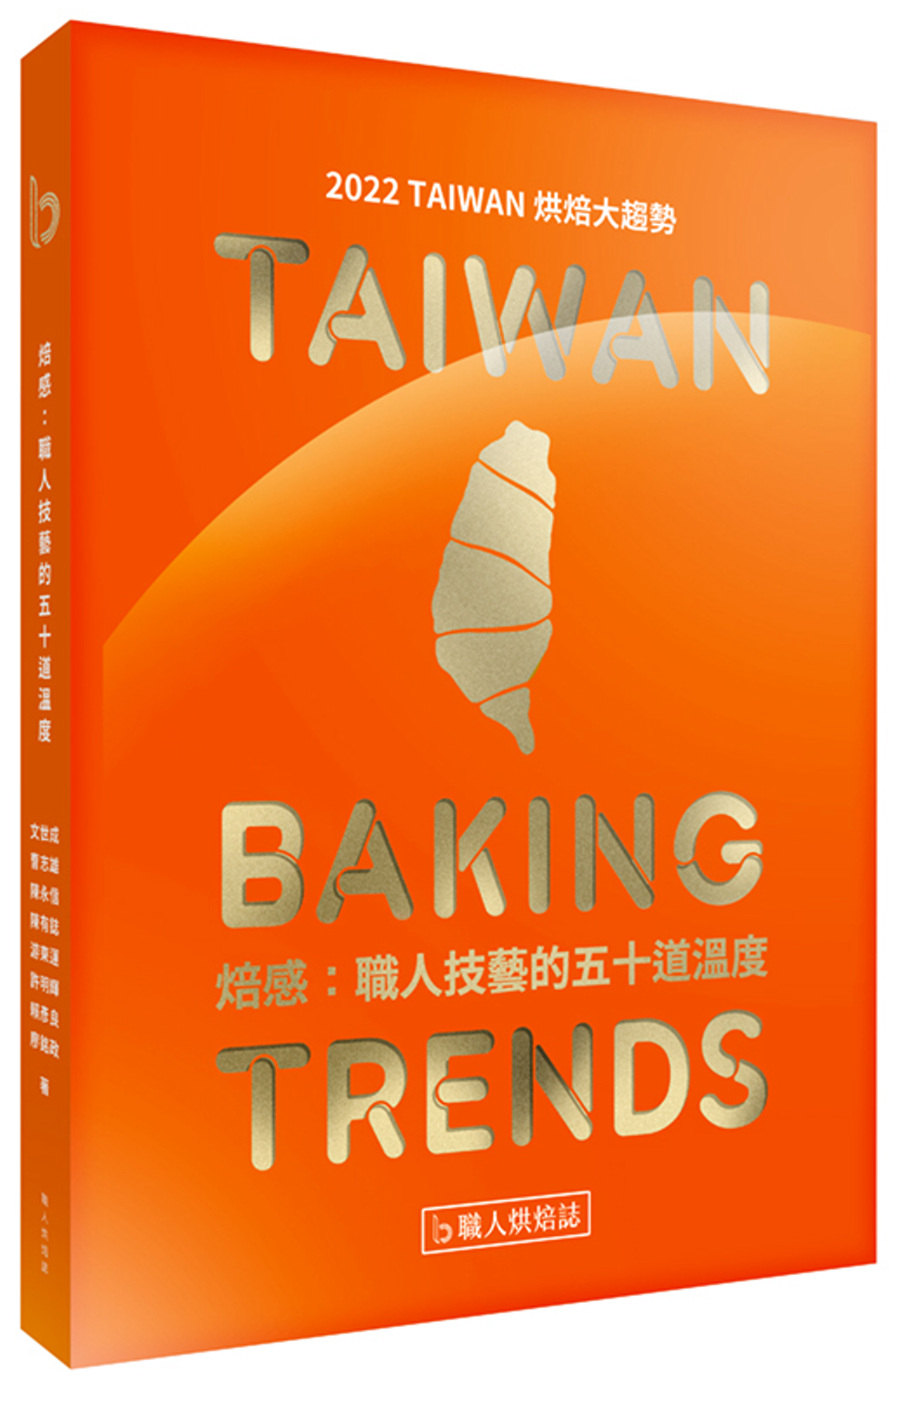 焙感：職人技藝的五十道溫度：2022 TAIWAN 烘焙大趨...